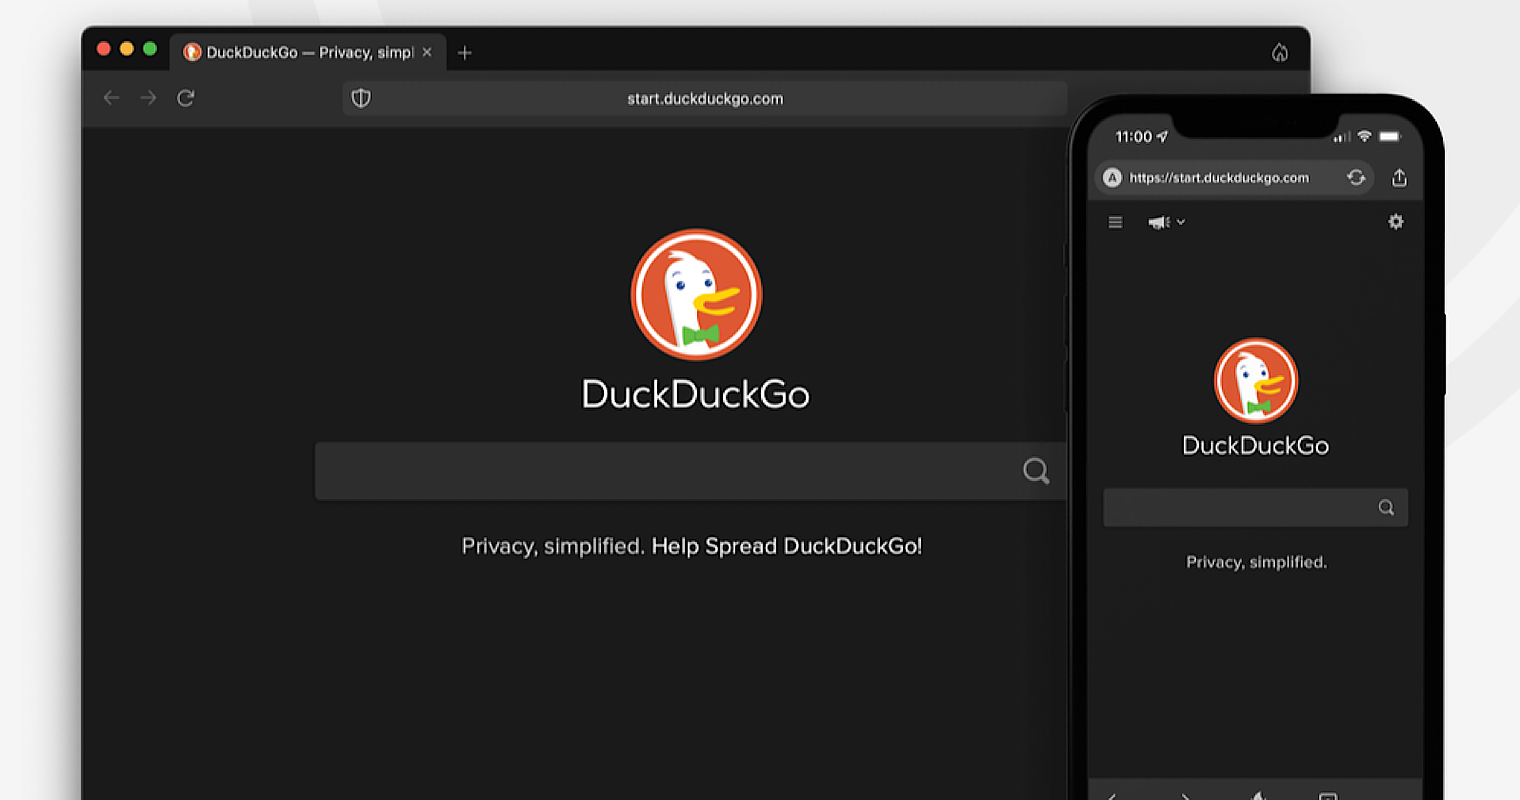 DuckDuckGo To Release Desktop Version Of Mobile App